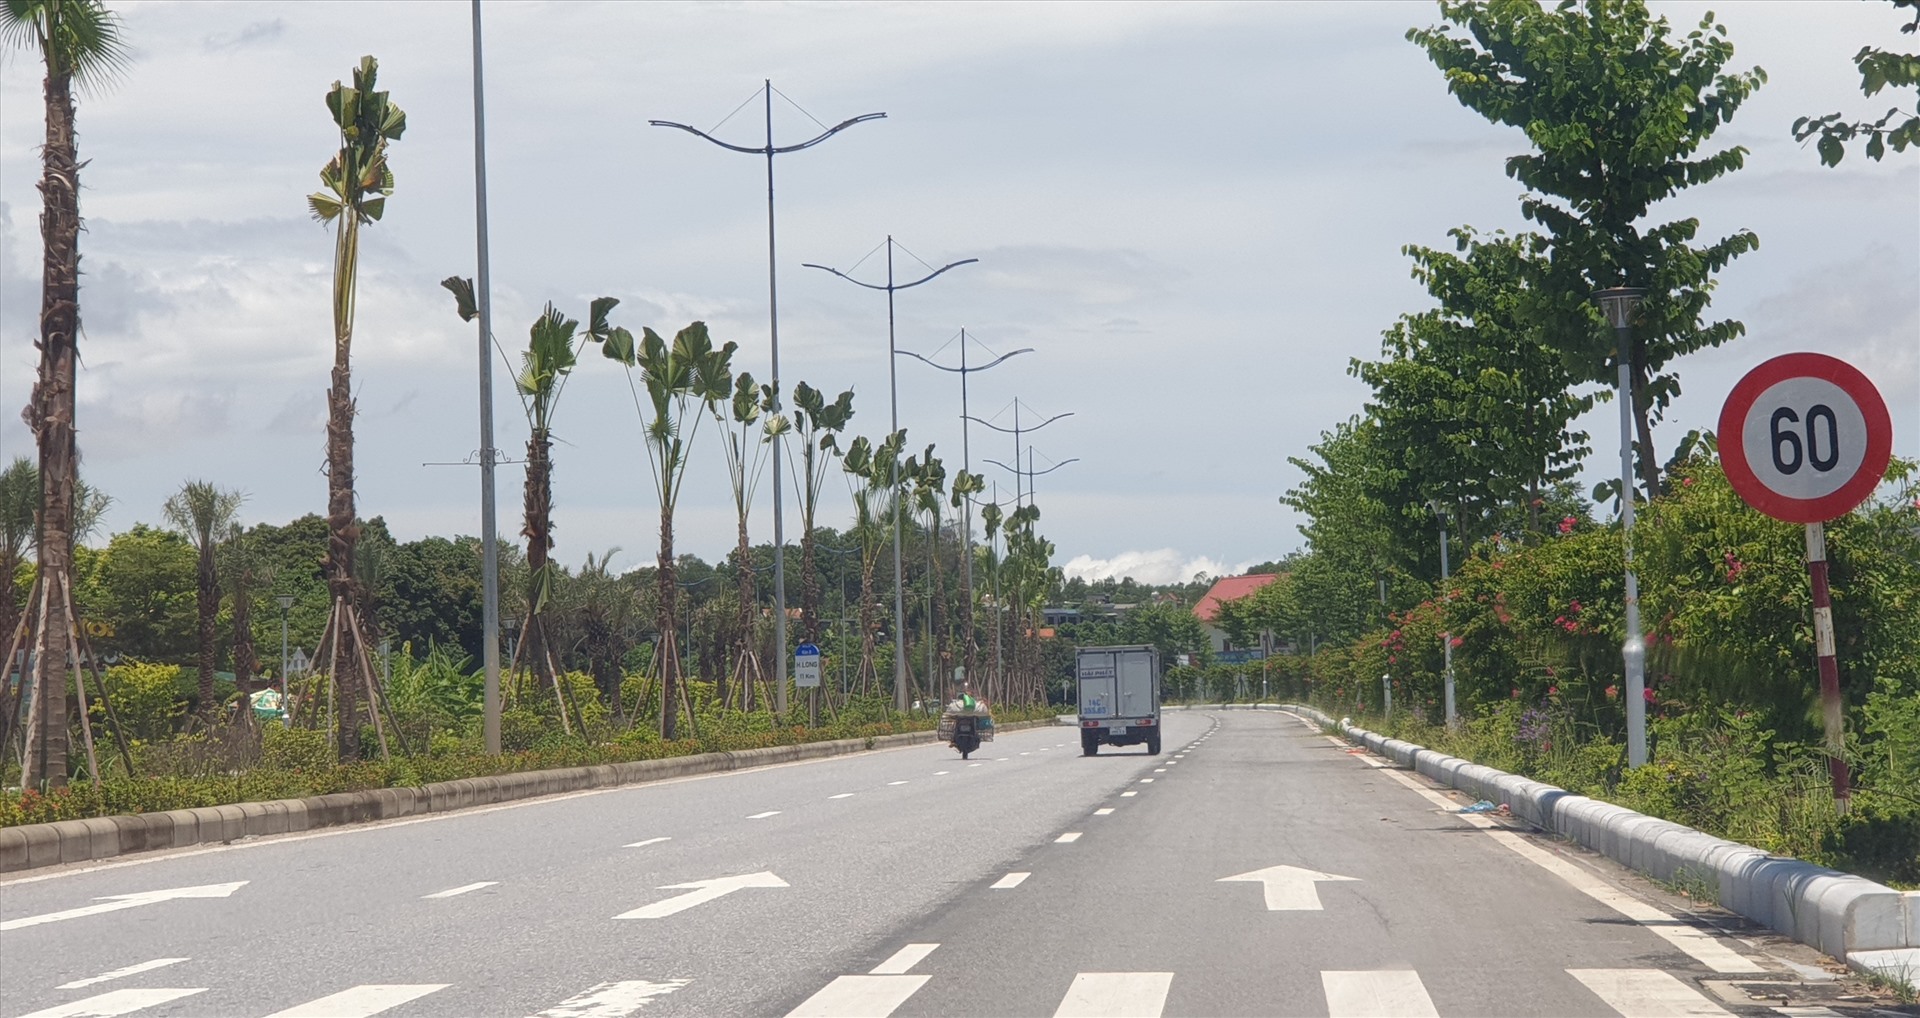 Các biển báo tốc độ 60km/h vẫn được giữ nguyên ở 2 đầu tuyến đường ven biển Hạ Long - Cẩm Phả do nằm trong khu vực đông dân cư. Ảnh: Nguyễn Hùng